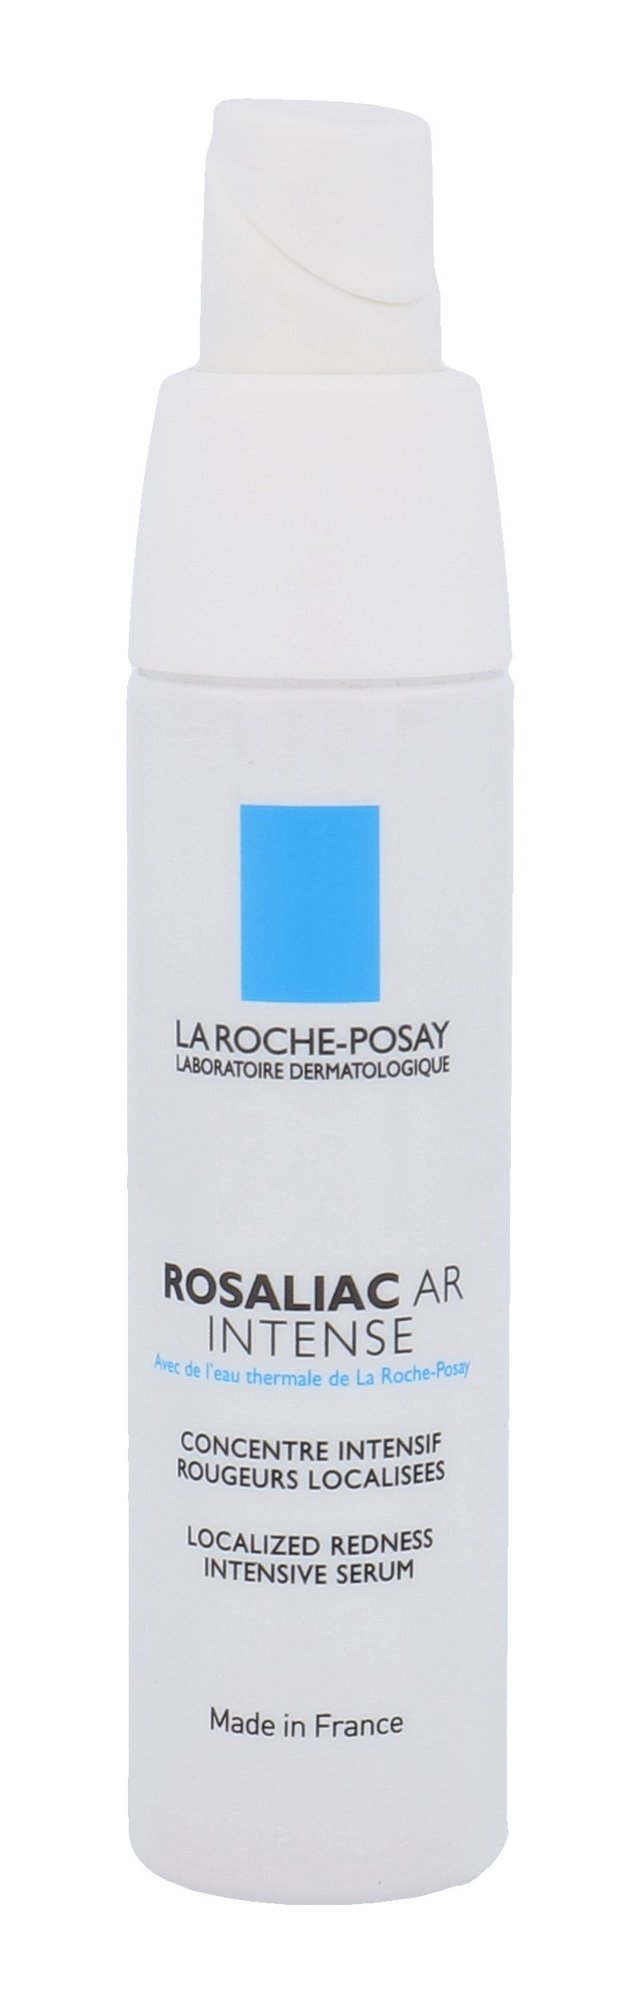 La Roche-Posay Rosaliac AR Intense Intensive Care